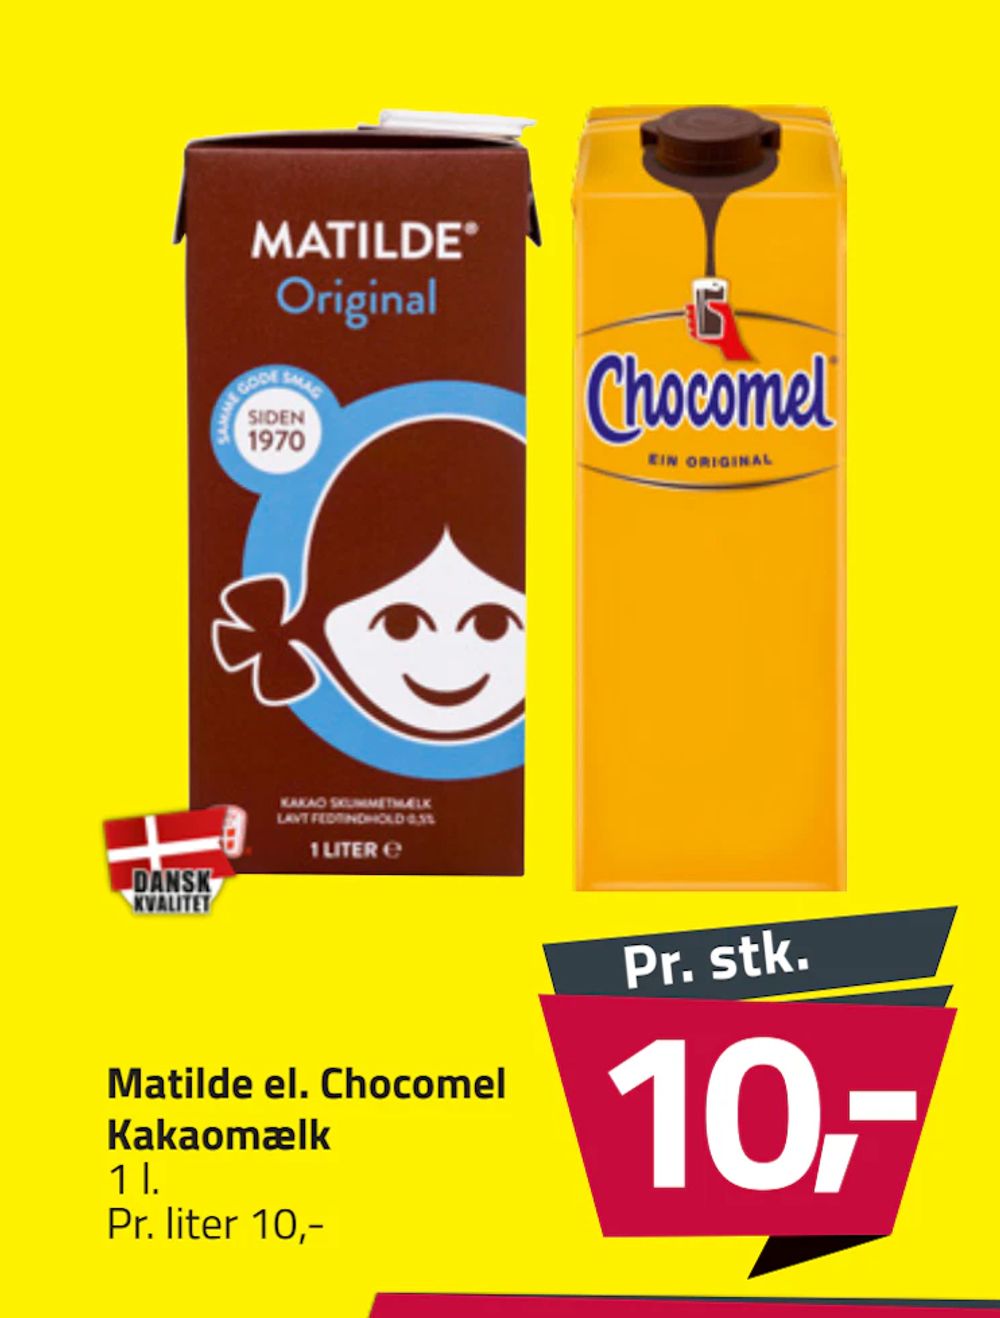 Tilbud på Matilde el. Chocomel Kakaomælk fra Fleggaard til 10 kr.